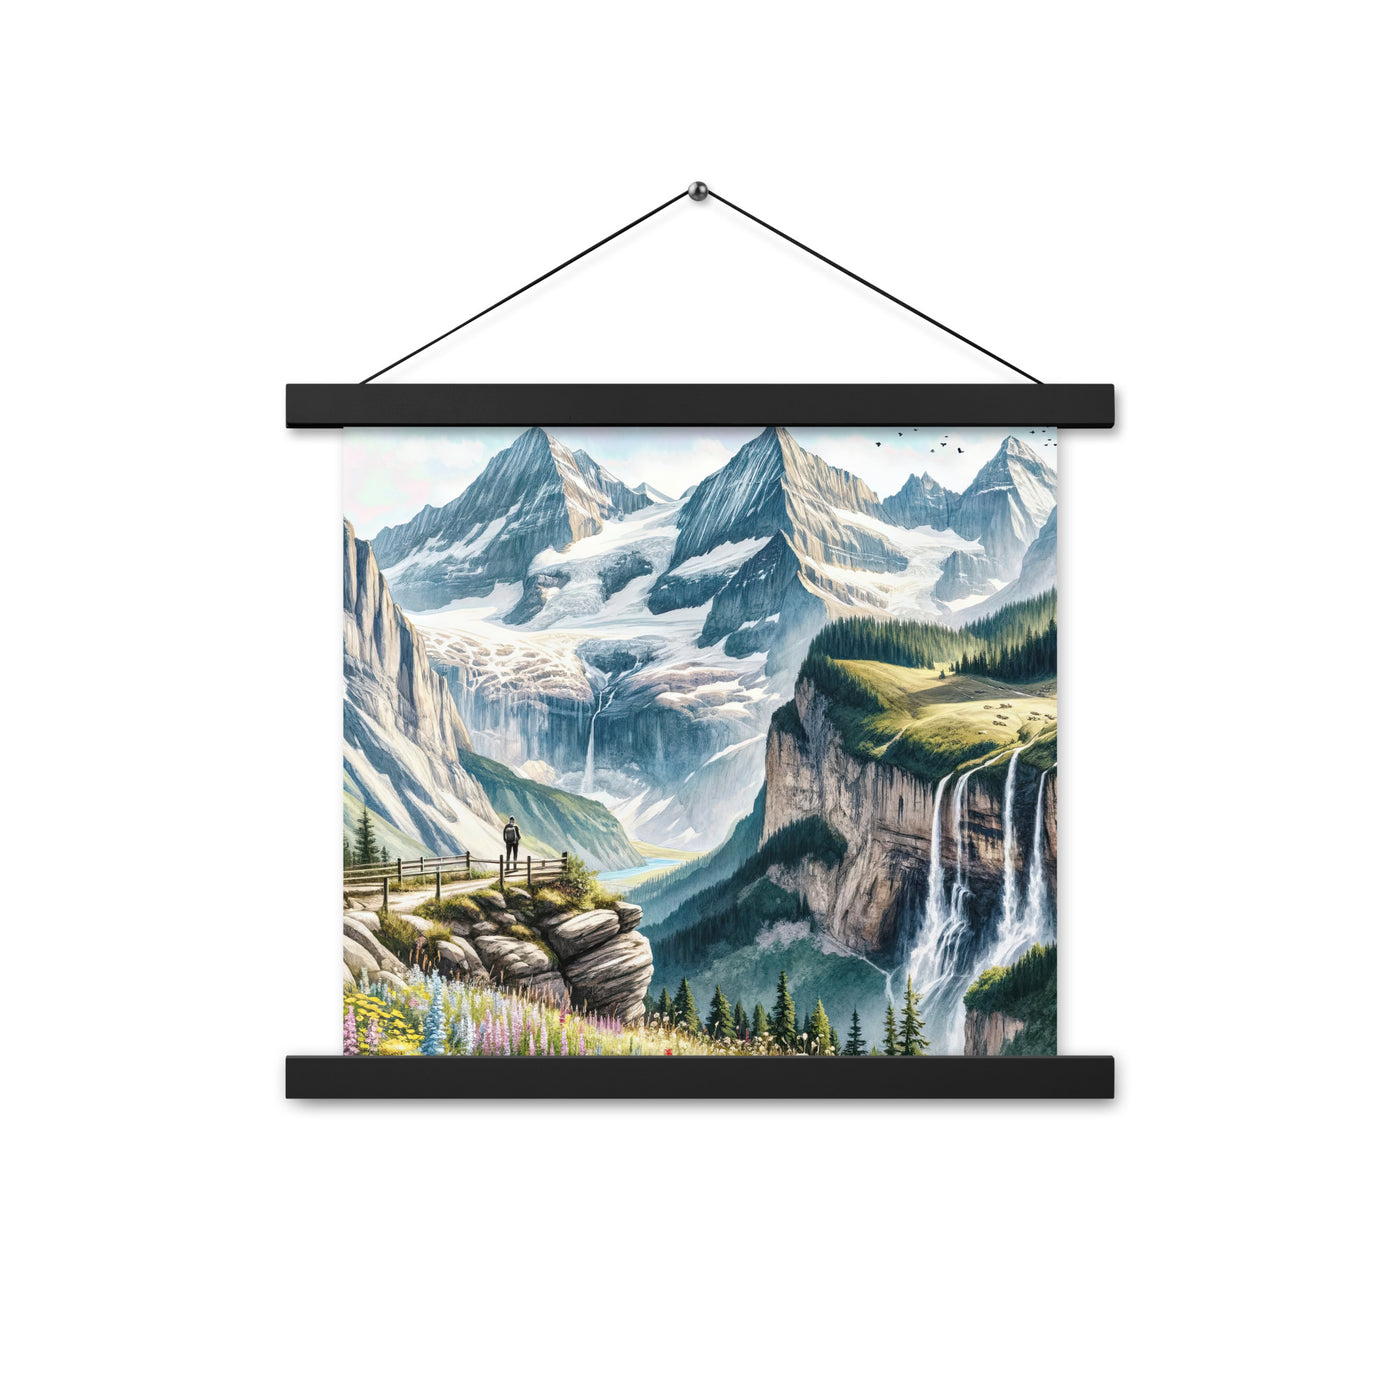 Aquarell-Panoramablick der Alpen mit schneebedeckten Gipfeln, Wasserfällen und Wanderern - Premium Poster mit Aufhängung wandern xxx yyy zzz 35.6 x 35.6 cm